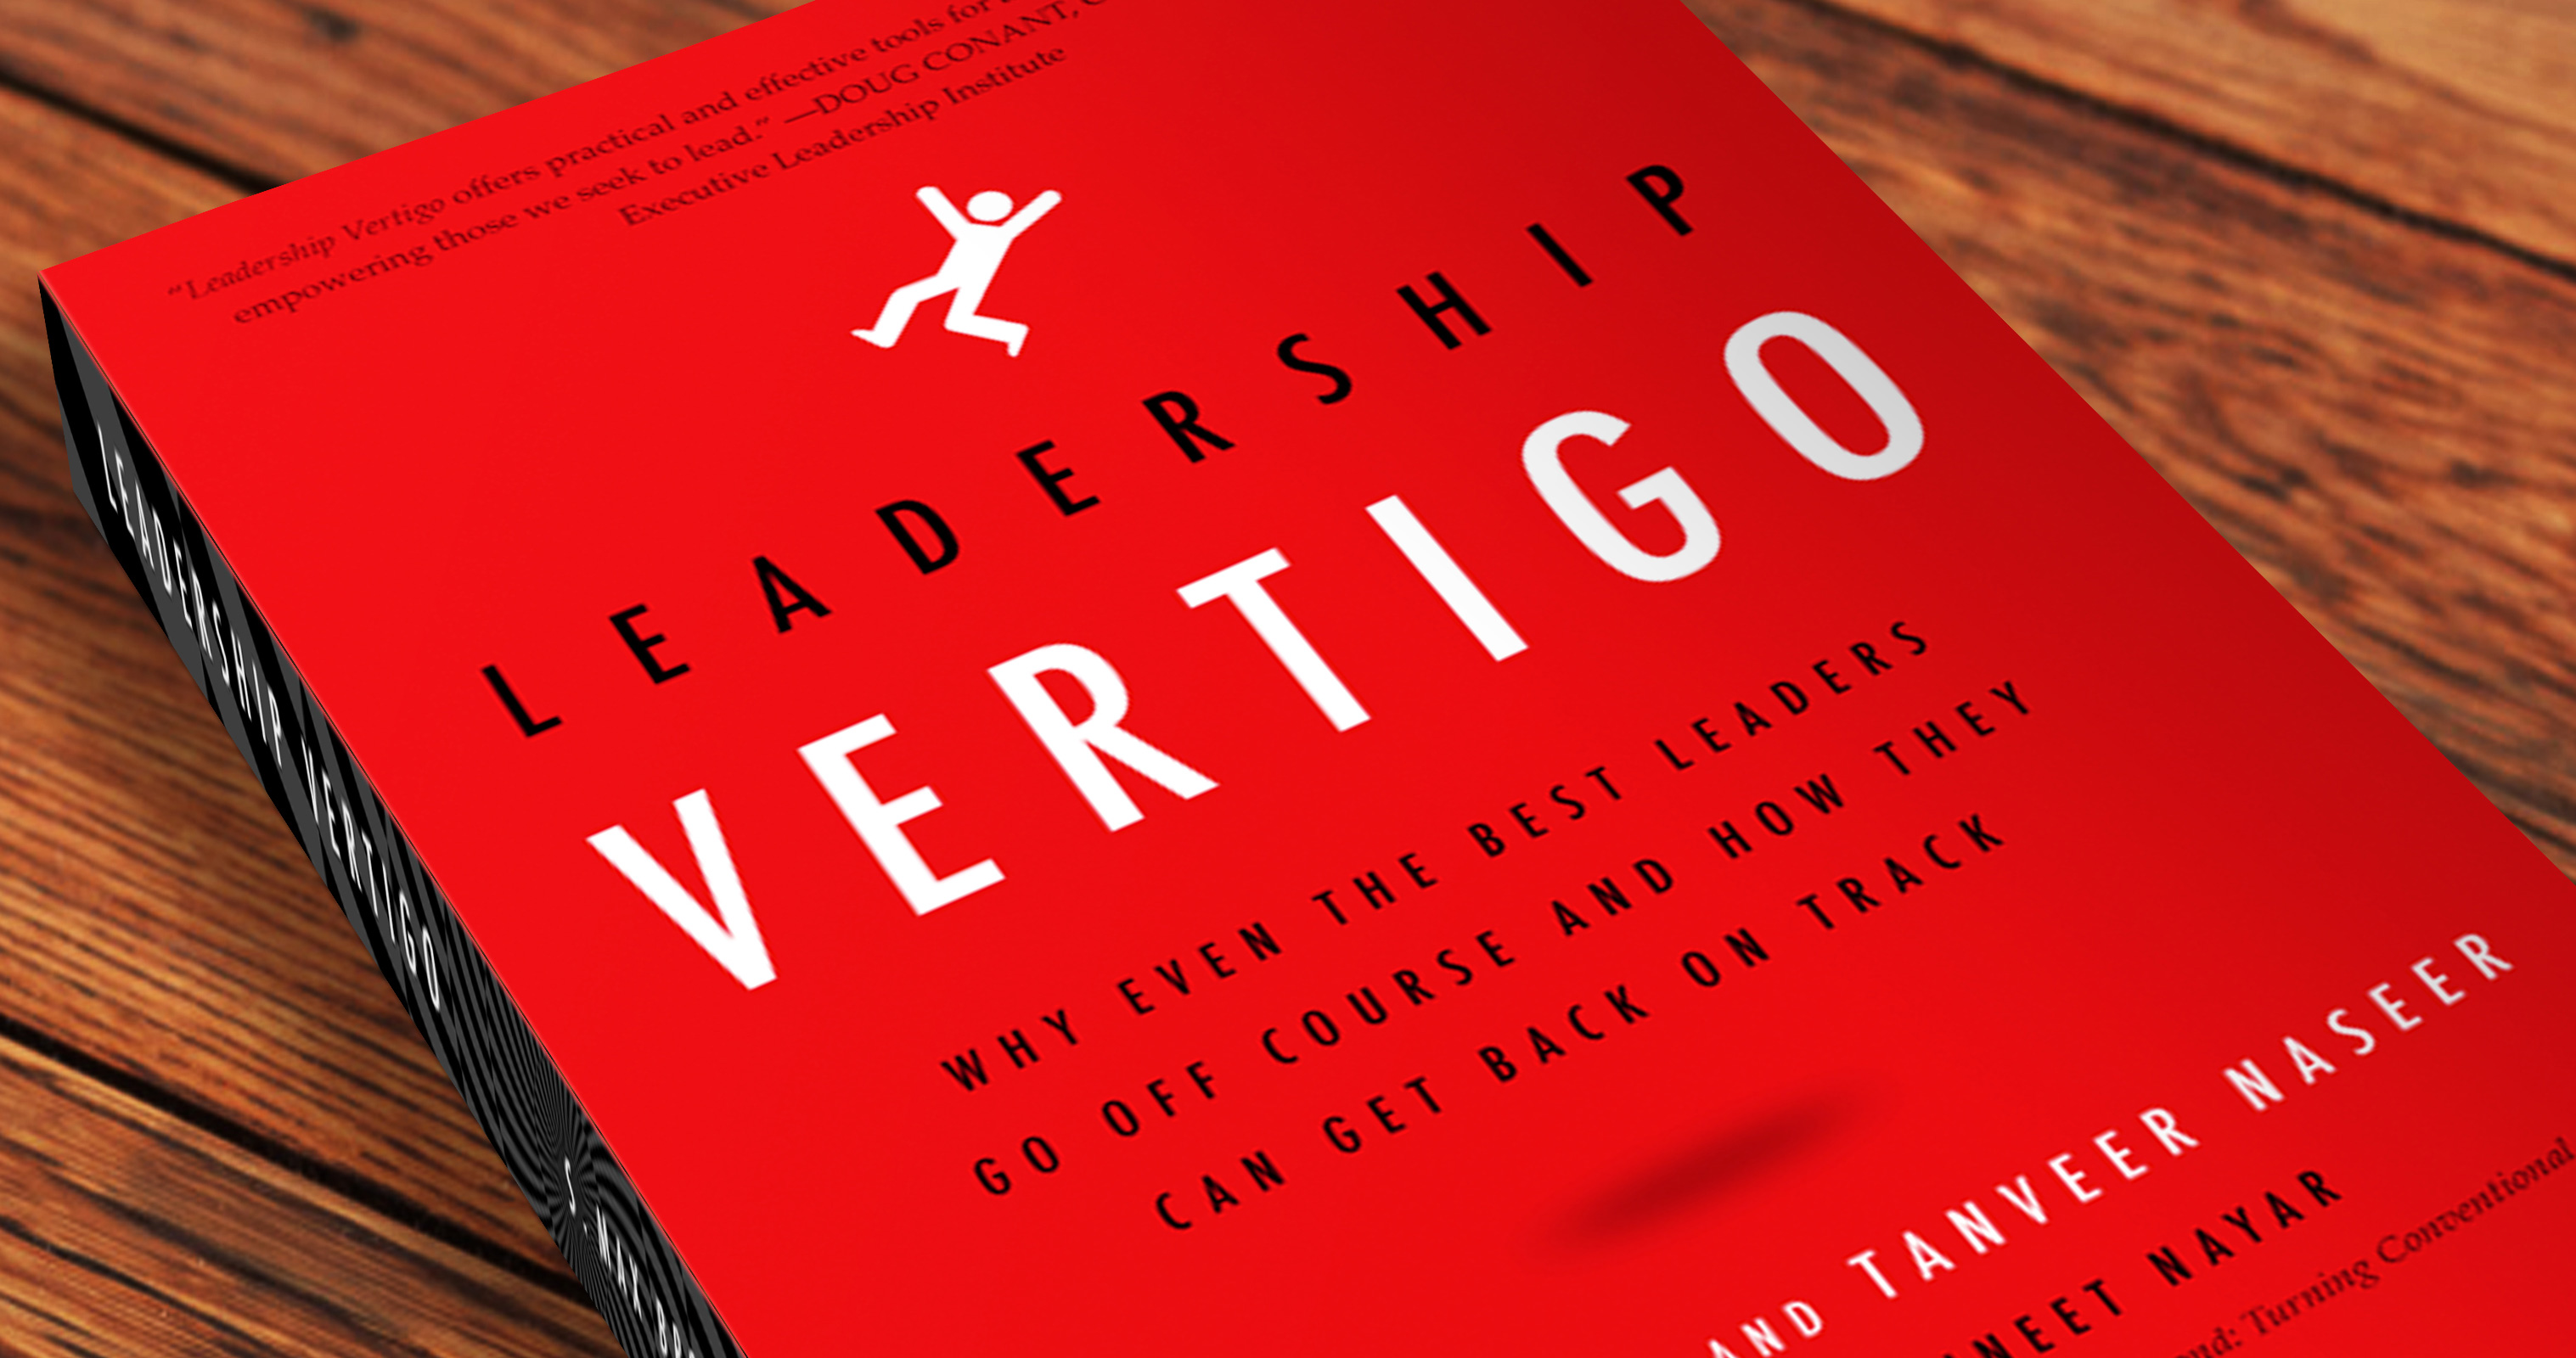 Leadership Vertigo book by Tanveer Naseer